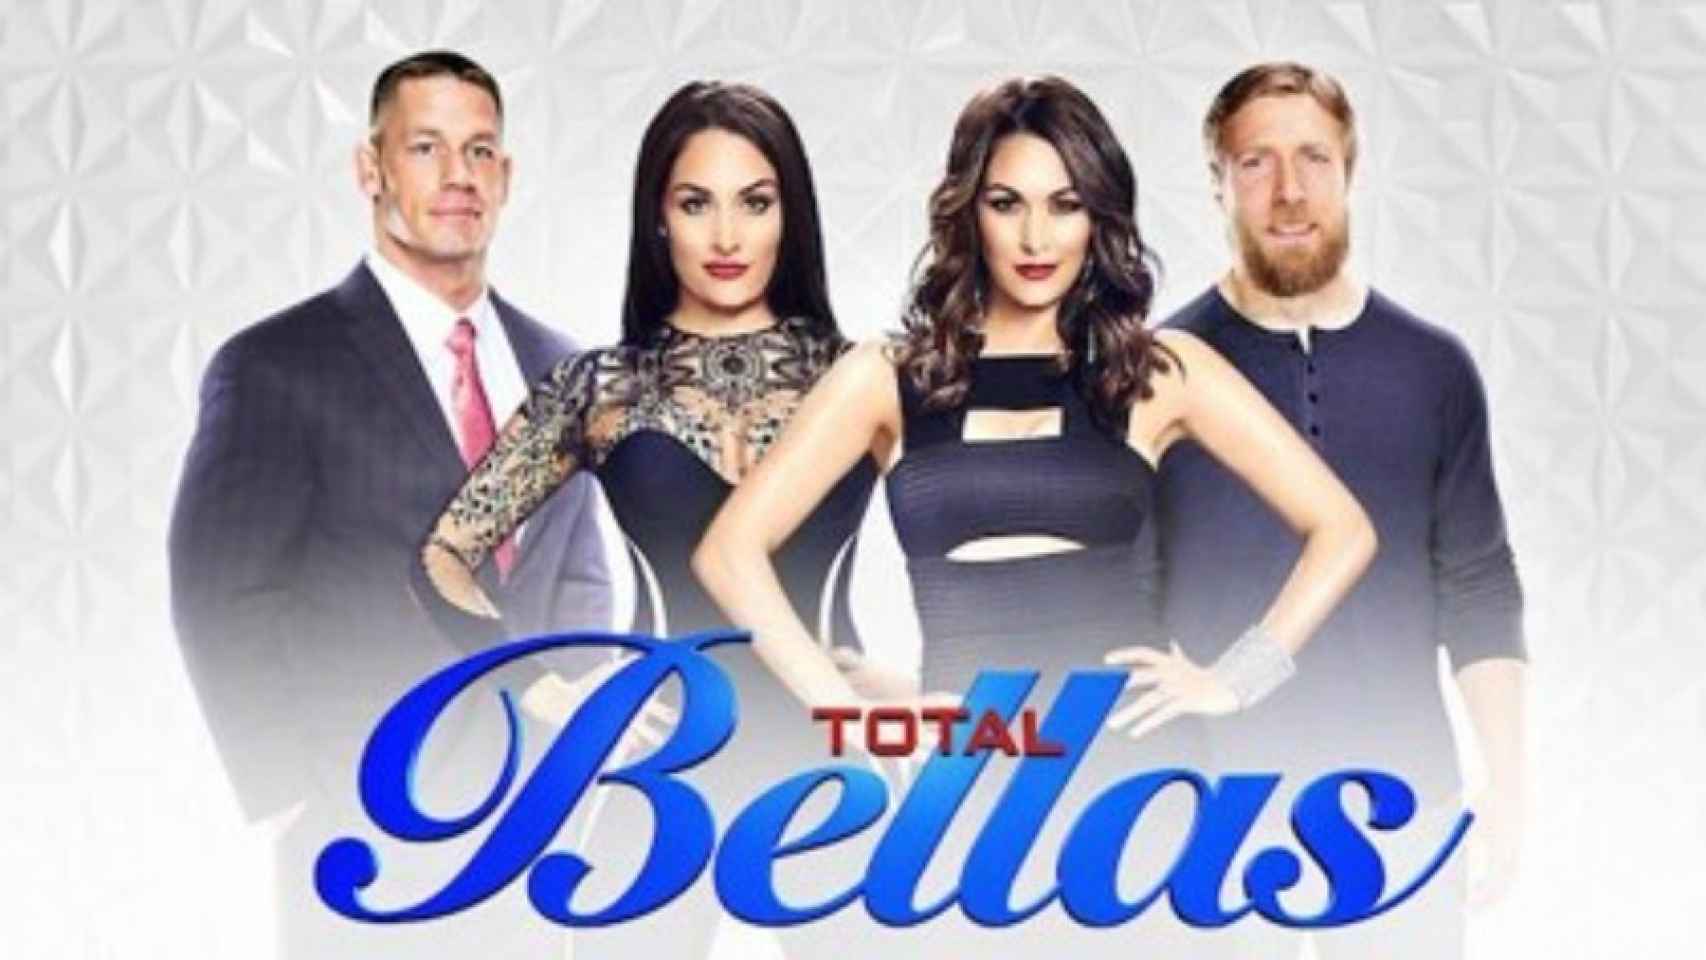 Diez cosas para conocer a Nikki Bella, la estrella de la WWE que ha anunciado su retirada1706 x 960